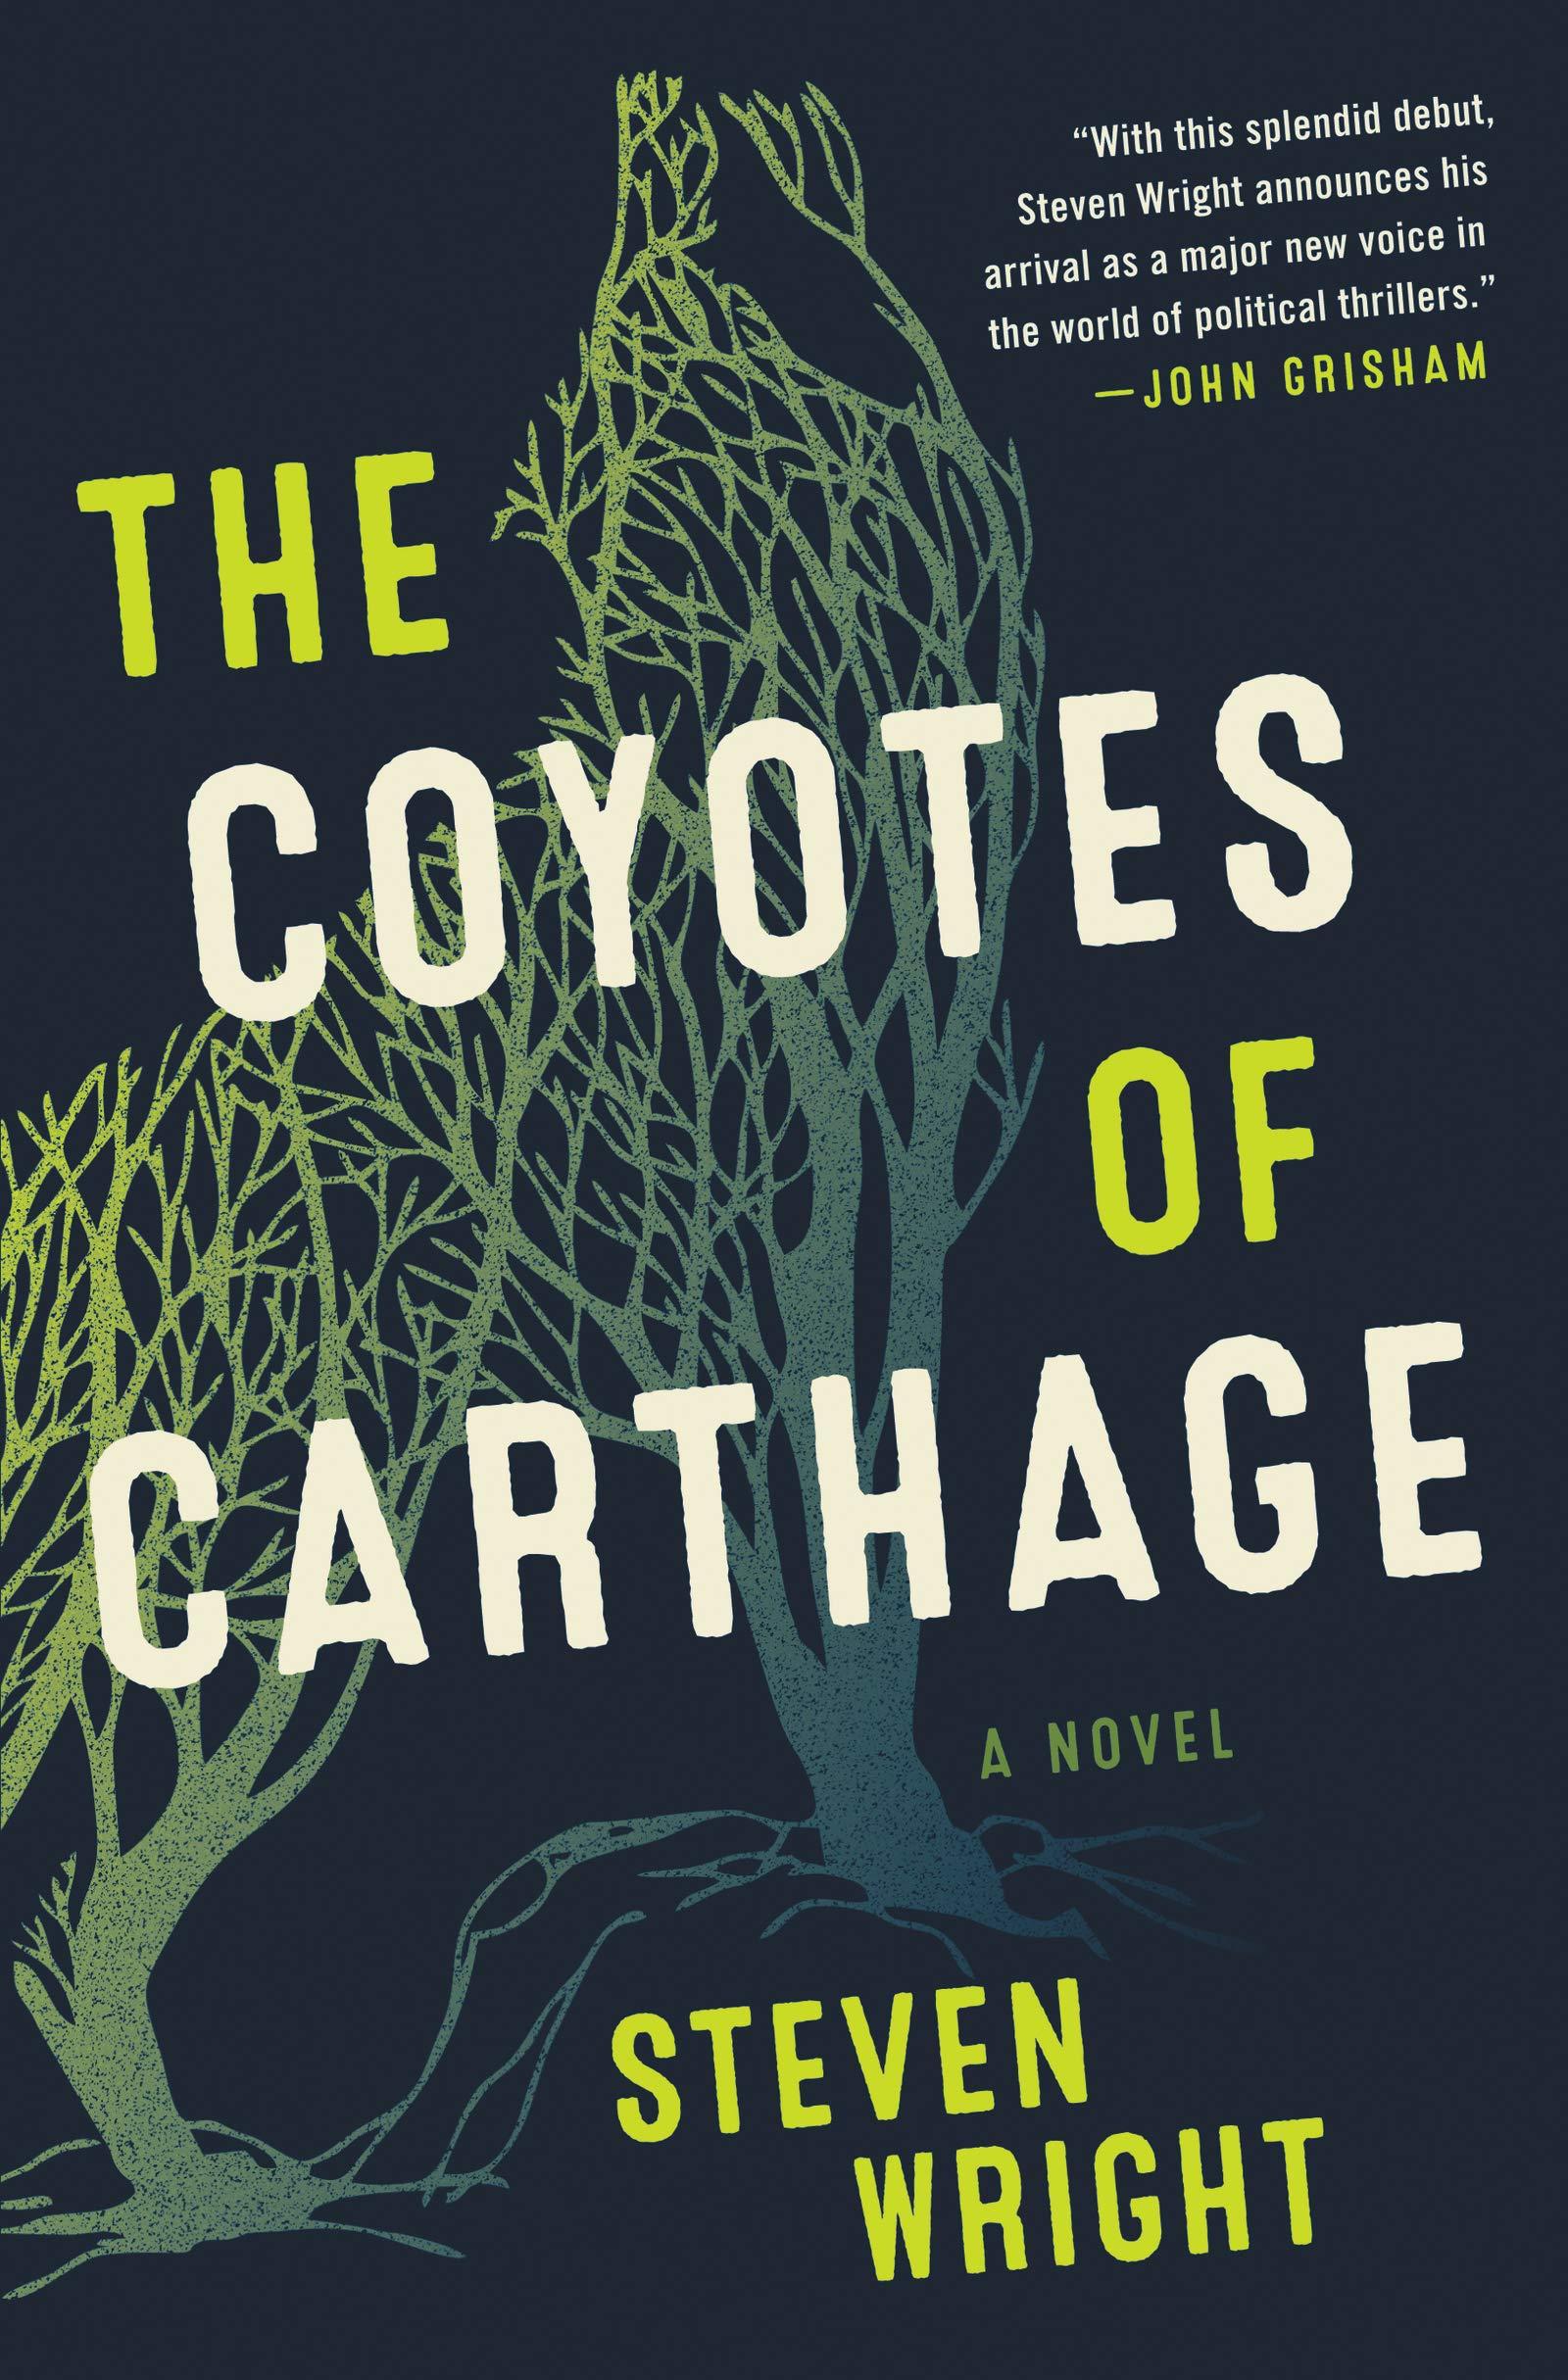 رواية "The Coyotes of Carthage" من أفضل روايات الجريمة والغموض في 2020